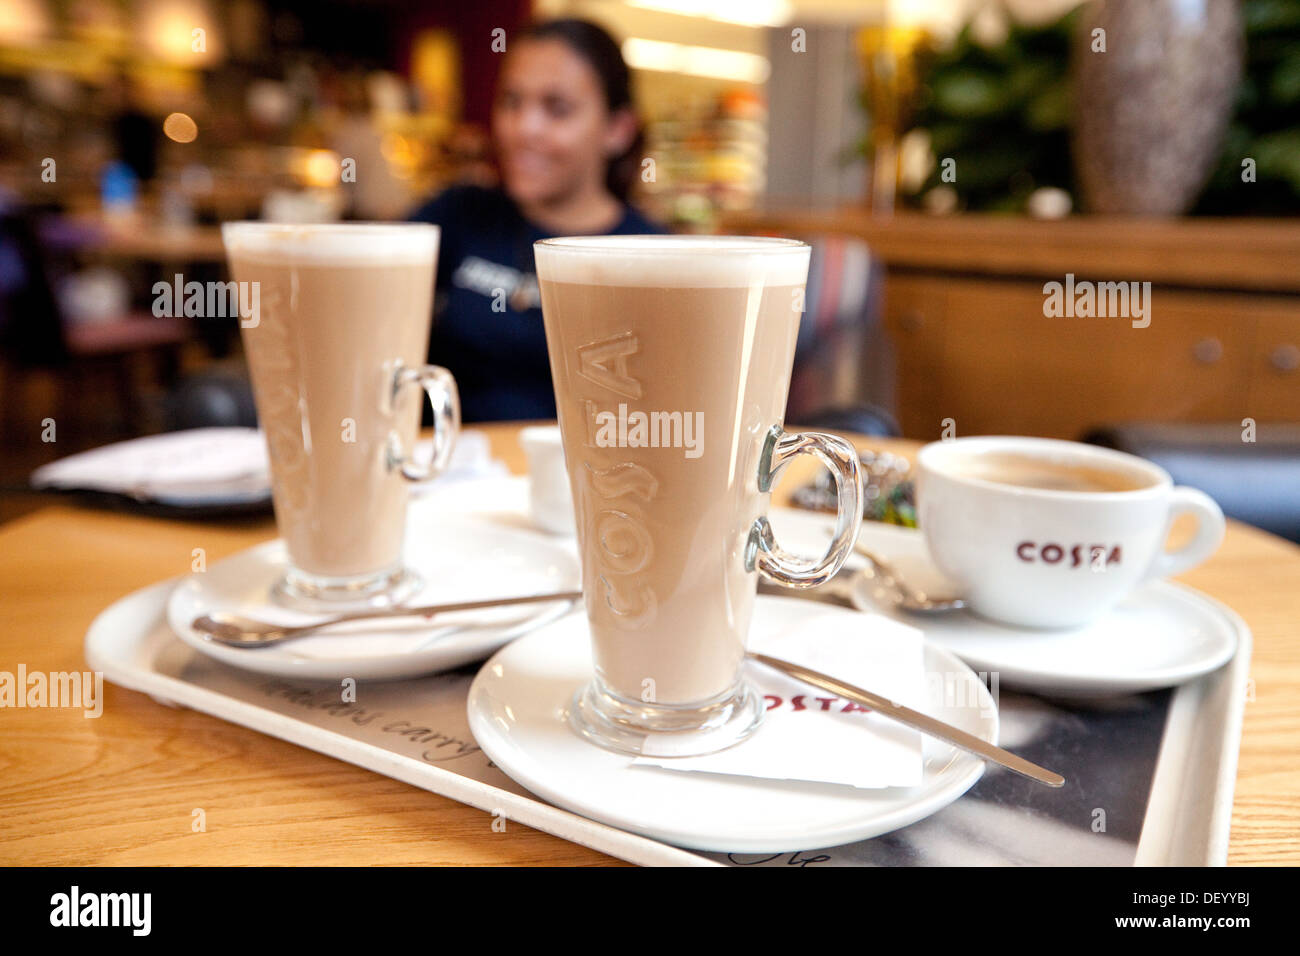 Costa Coffee, Latte und americano Coffee in einer Costa Coffee Bar in Birmingham, Großbritannien Stockfoto